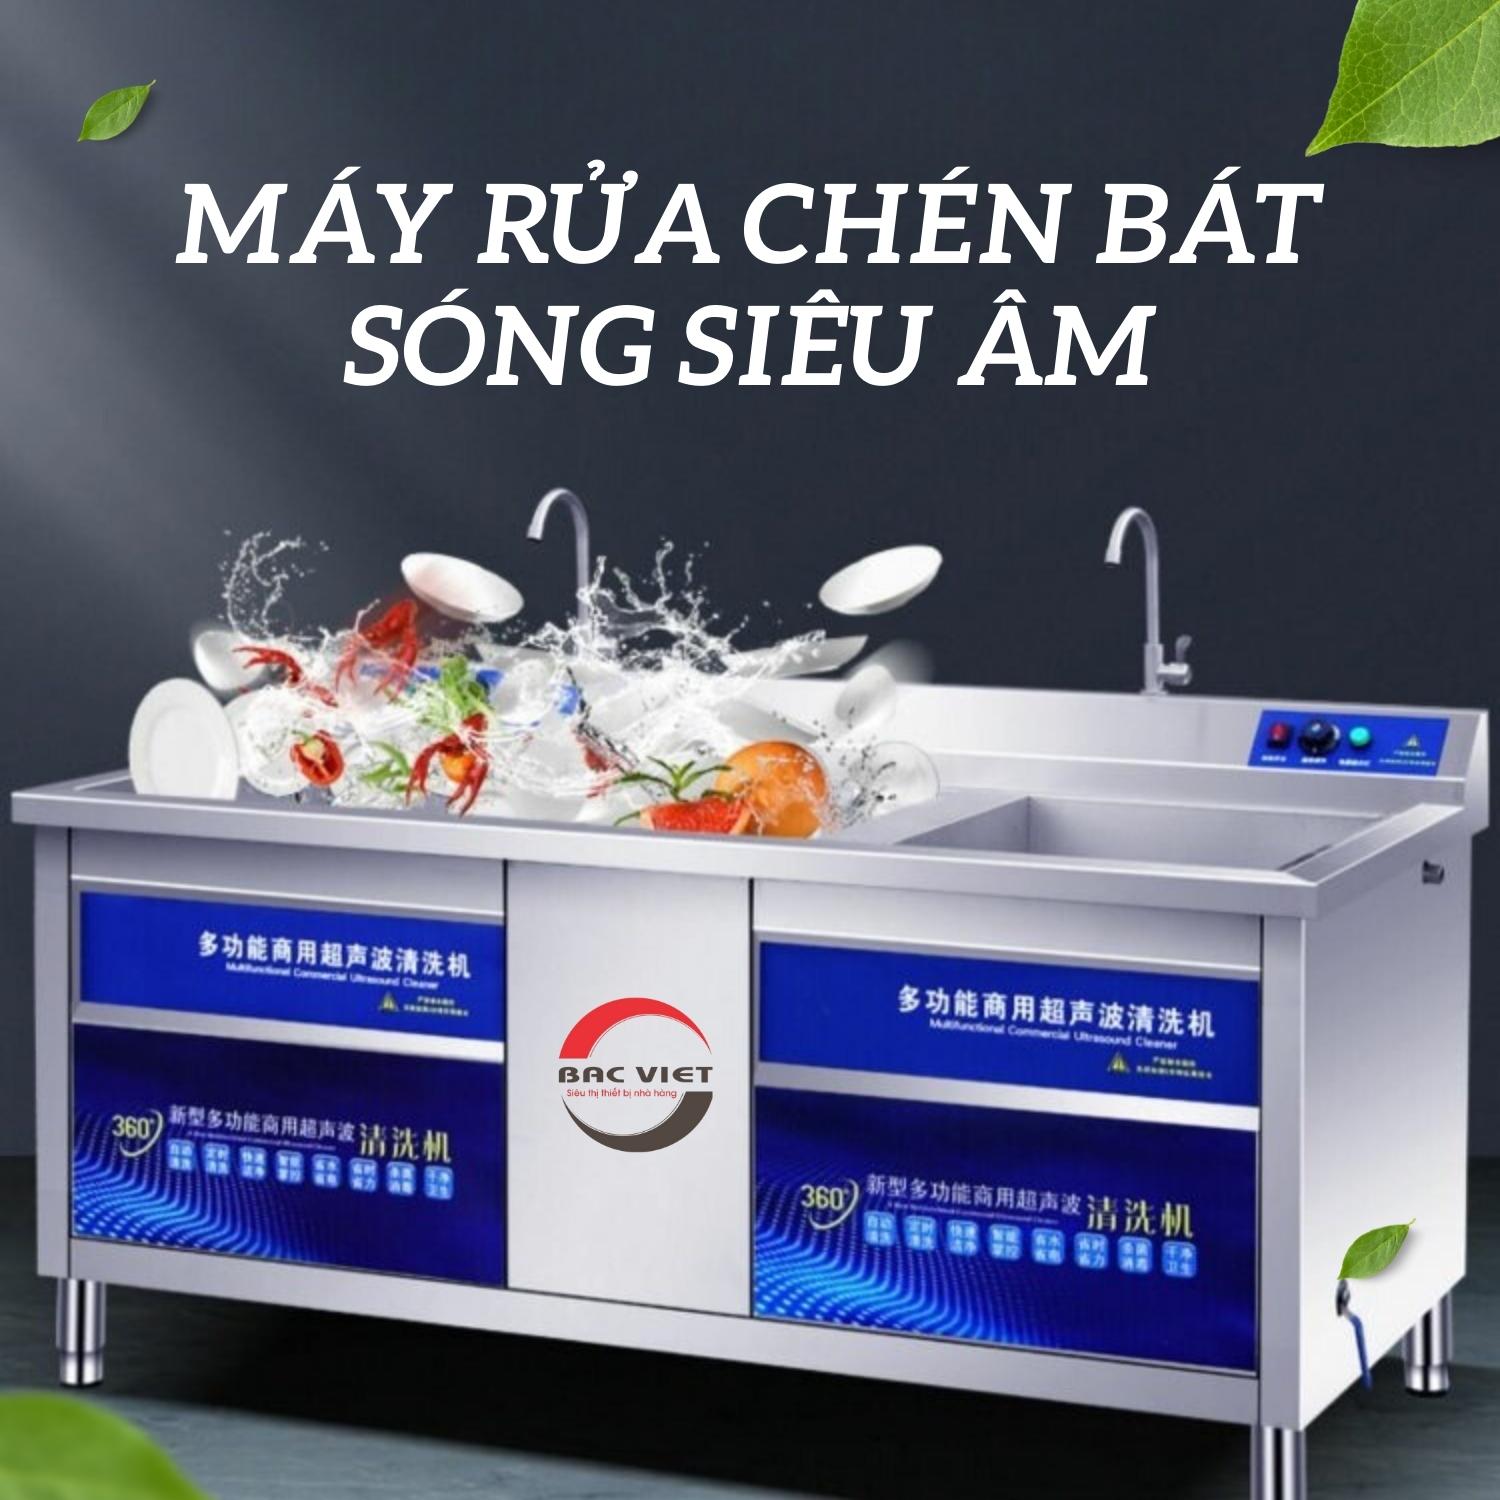 Máy rửa bát sóng siêu âm dành cho Cửa Hàng, Quán Ăn: Giới thiệu và nguyên lý hoạt động